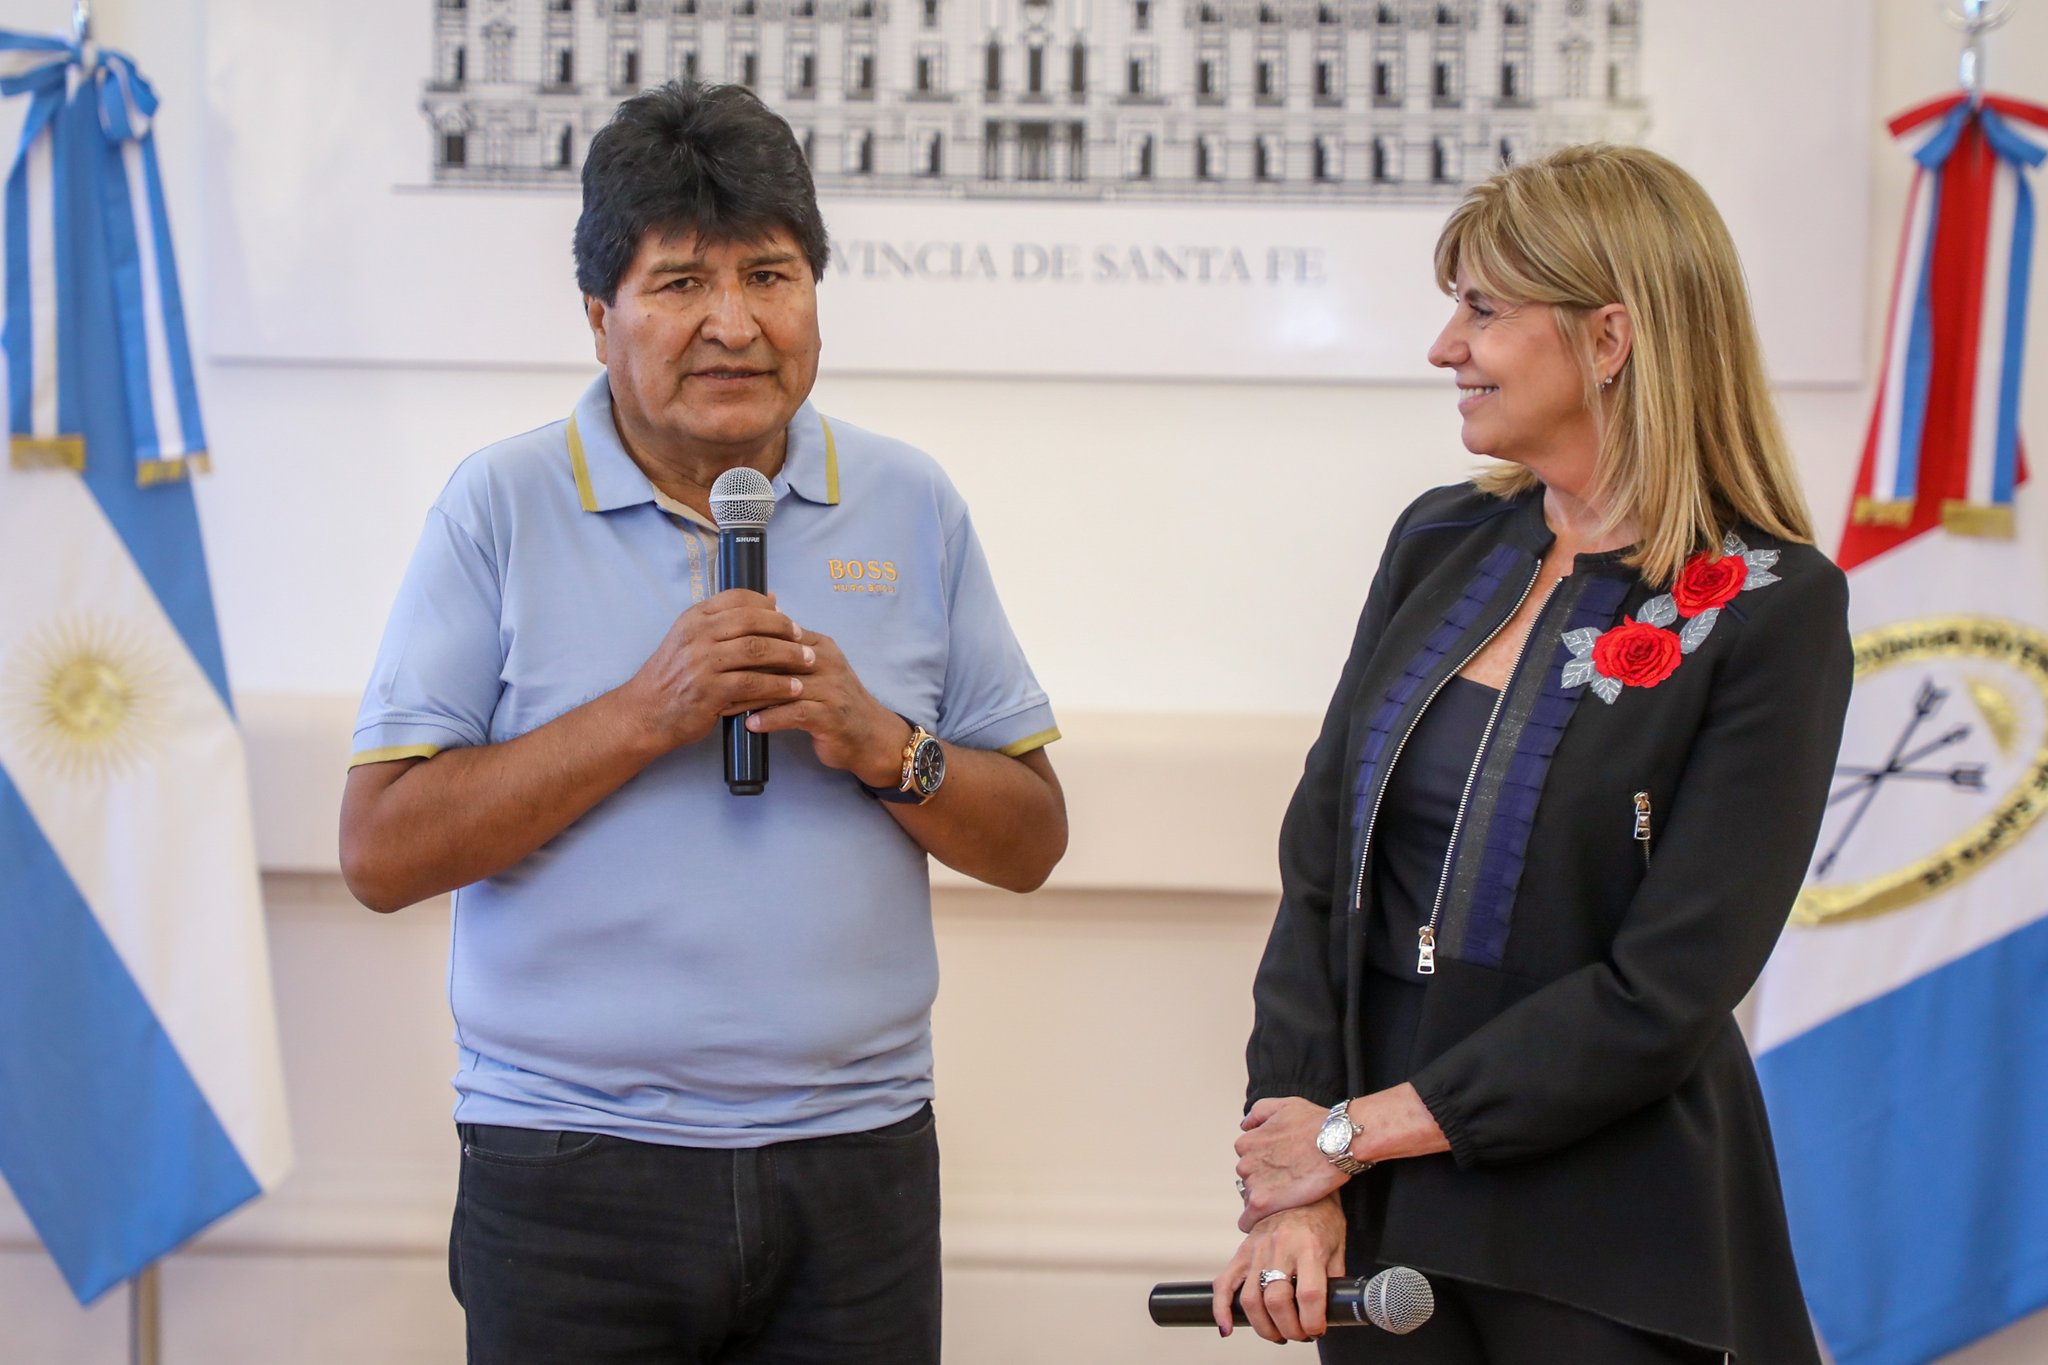 Evo Morales estuvo reunido al mediodía en Santa Fe con la vicegobernadora Alejandra Rodenas.